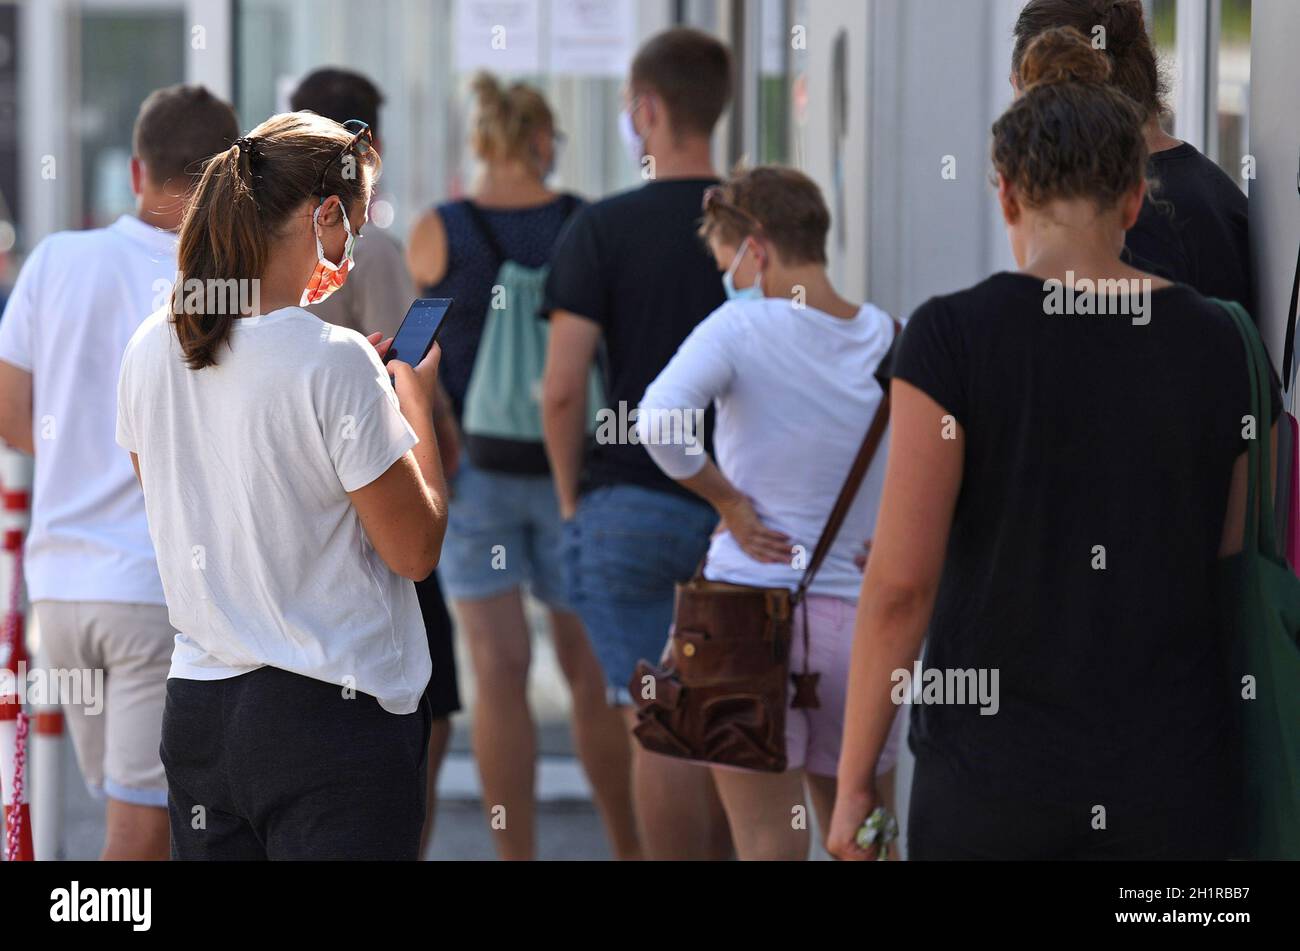 Warteschlange vor einem Geschäft während der Corona-Pandemie in Österreich, Europa - Queue in front of a shop during the corona pandemic in Austria, E Stock Photo